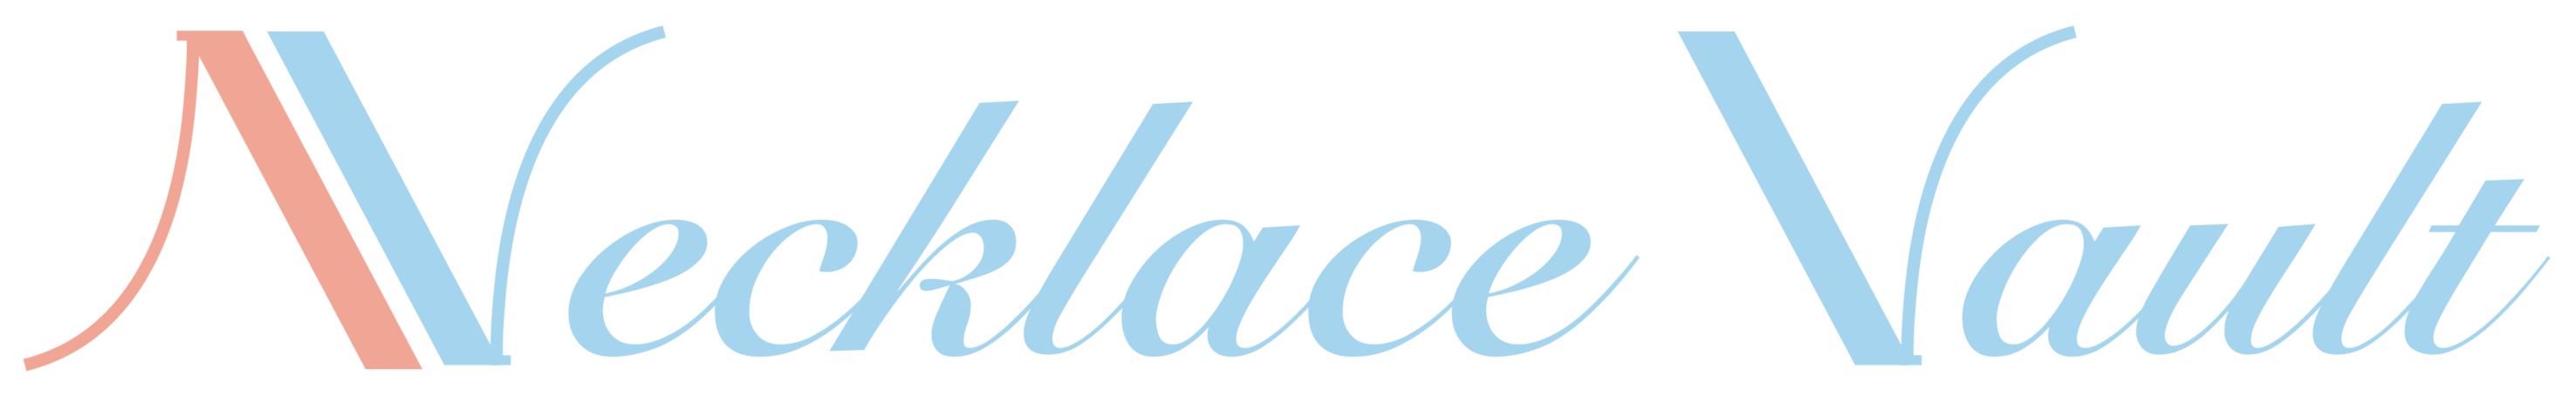 Necklace Vault Logo (Color)